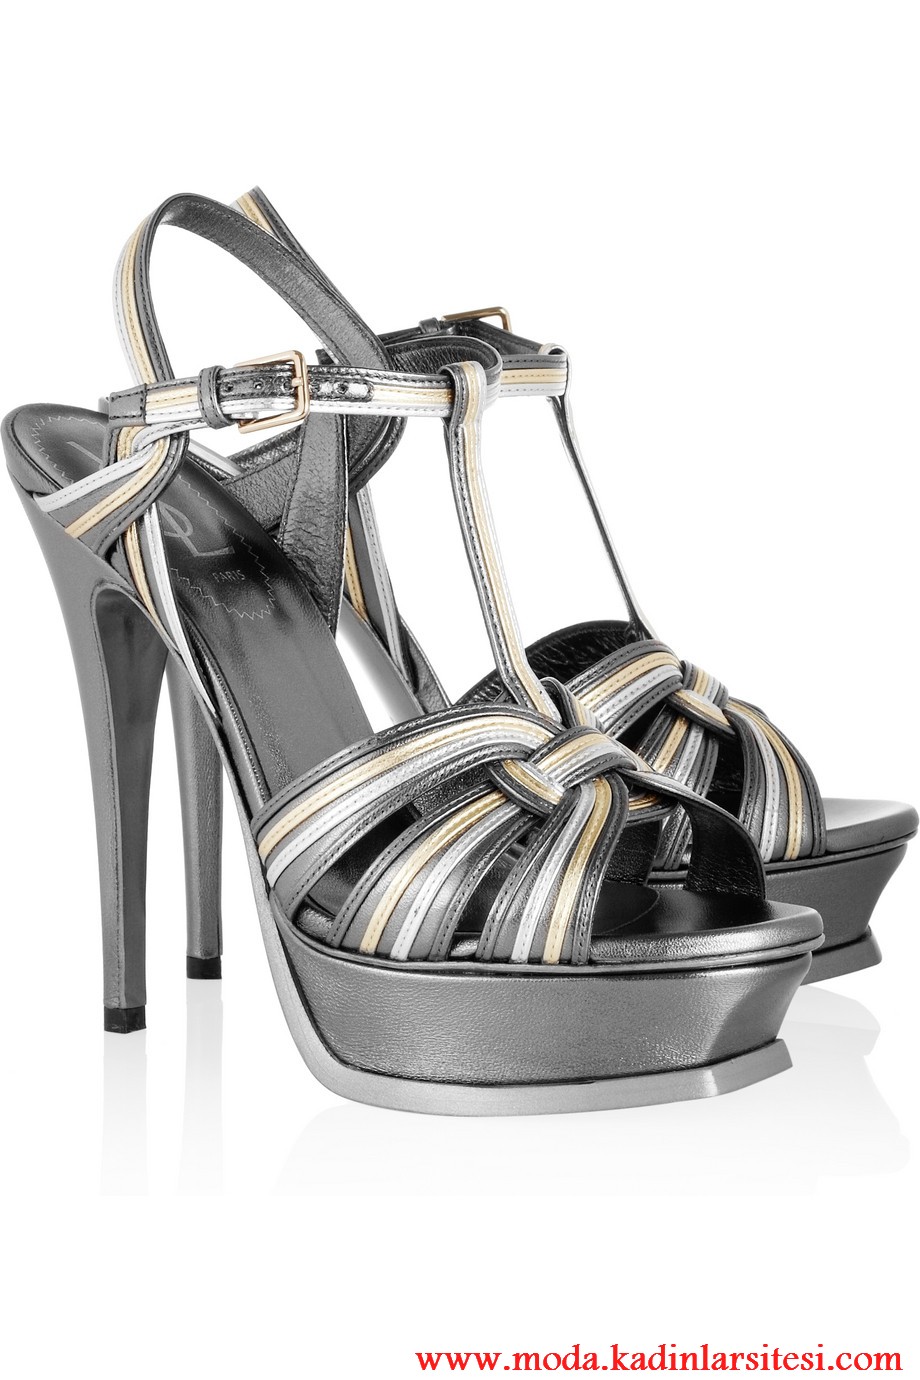 Yves Saint Laurent gri ayakkabı modeli